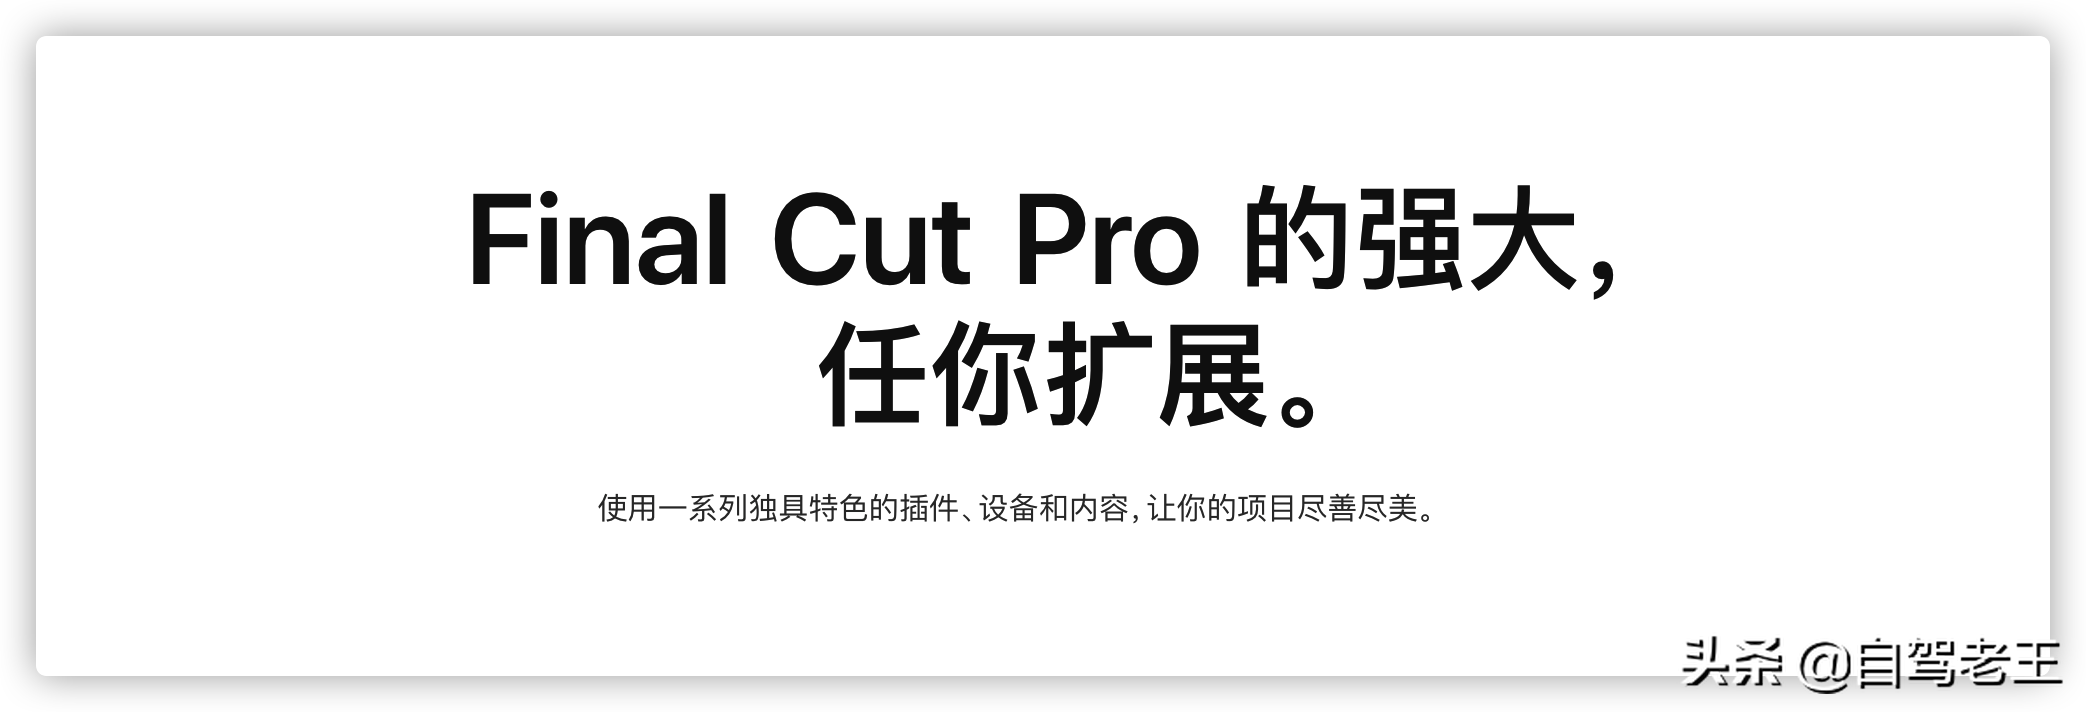 苹果视频剪辑FCPX软件 Final  Cut  Pro  X  10.5.2 英/中文版